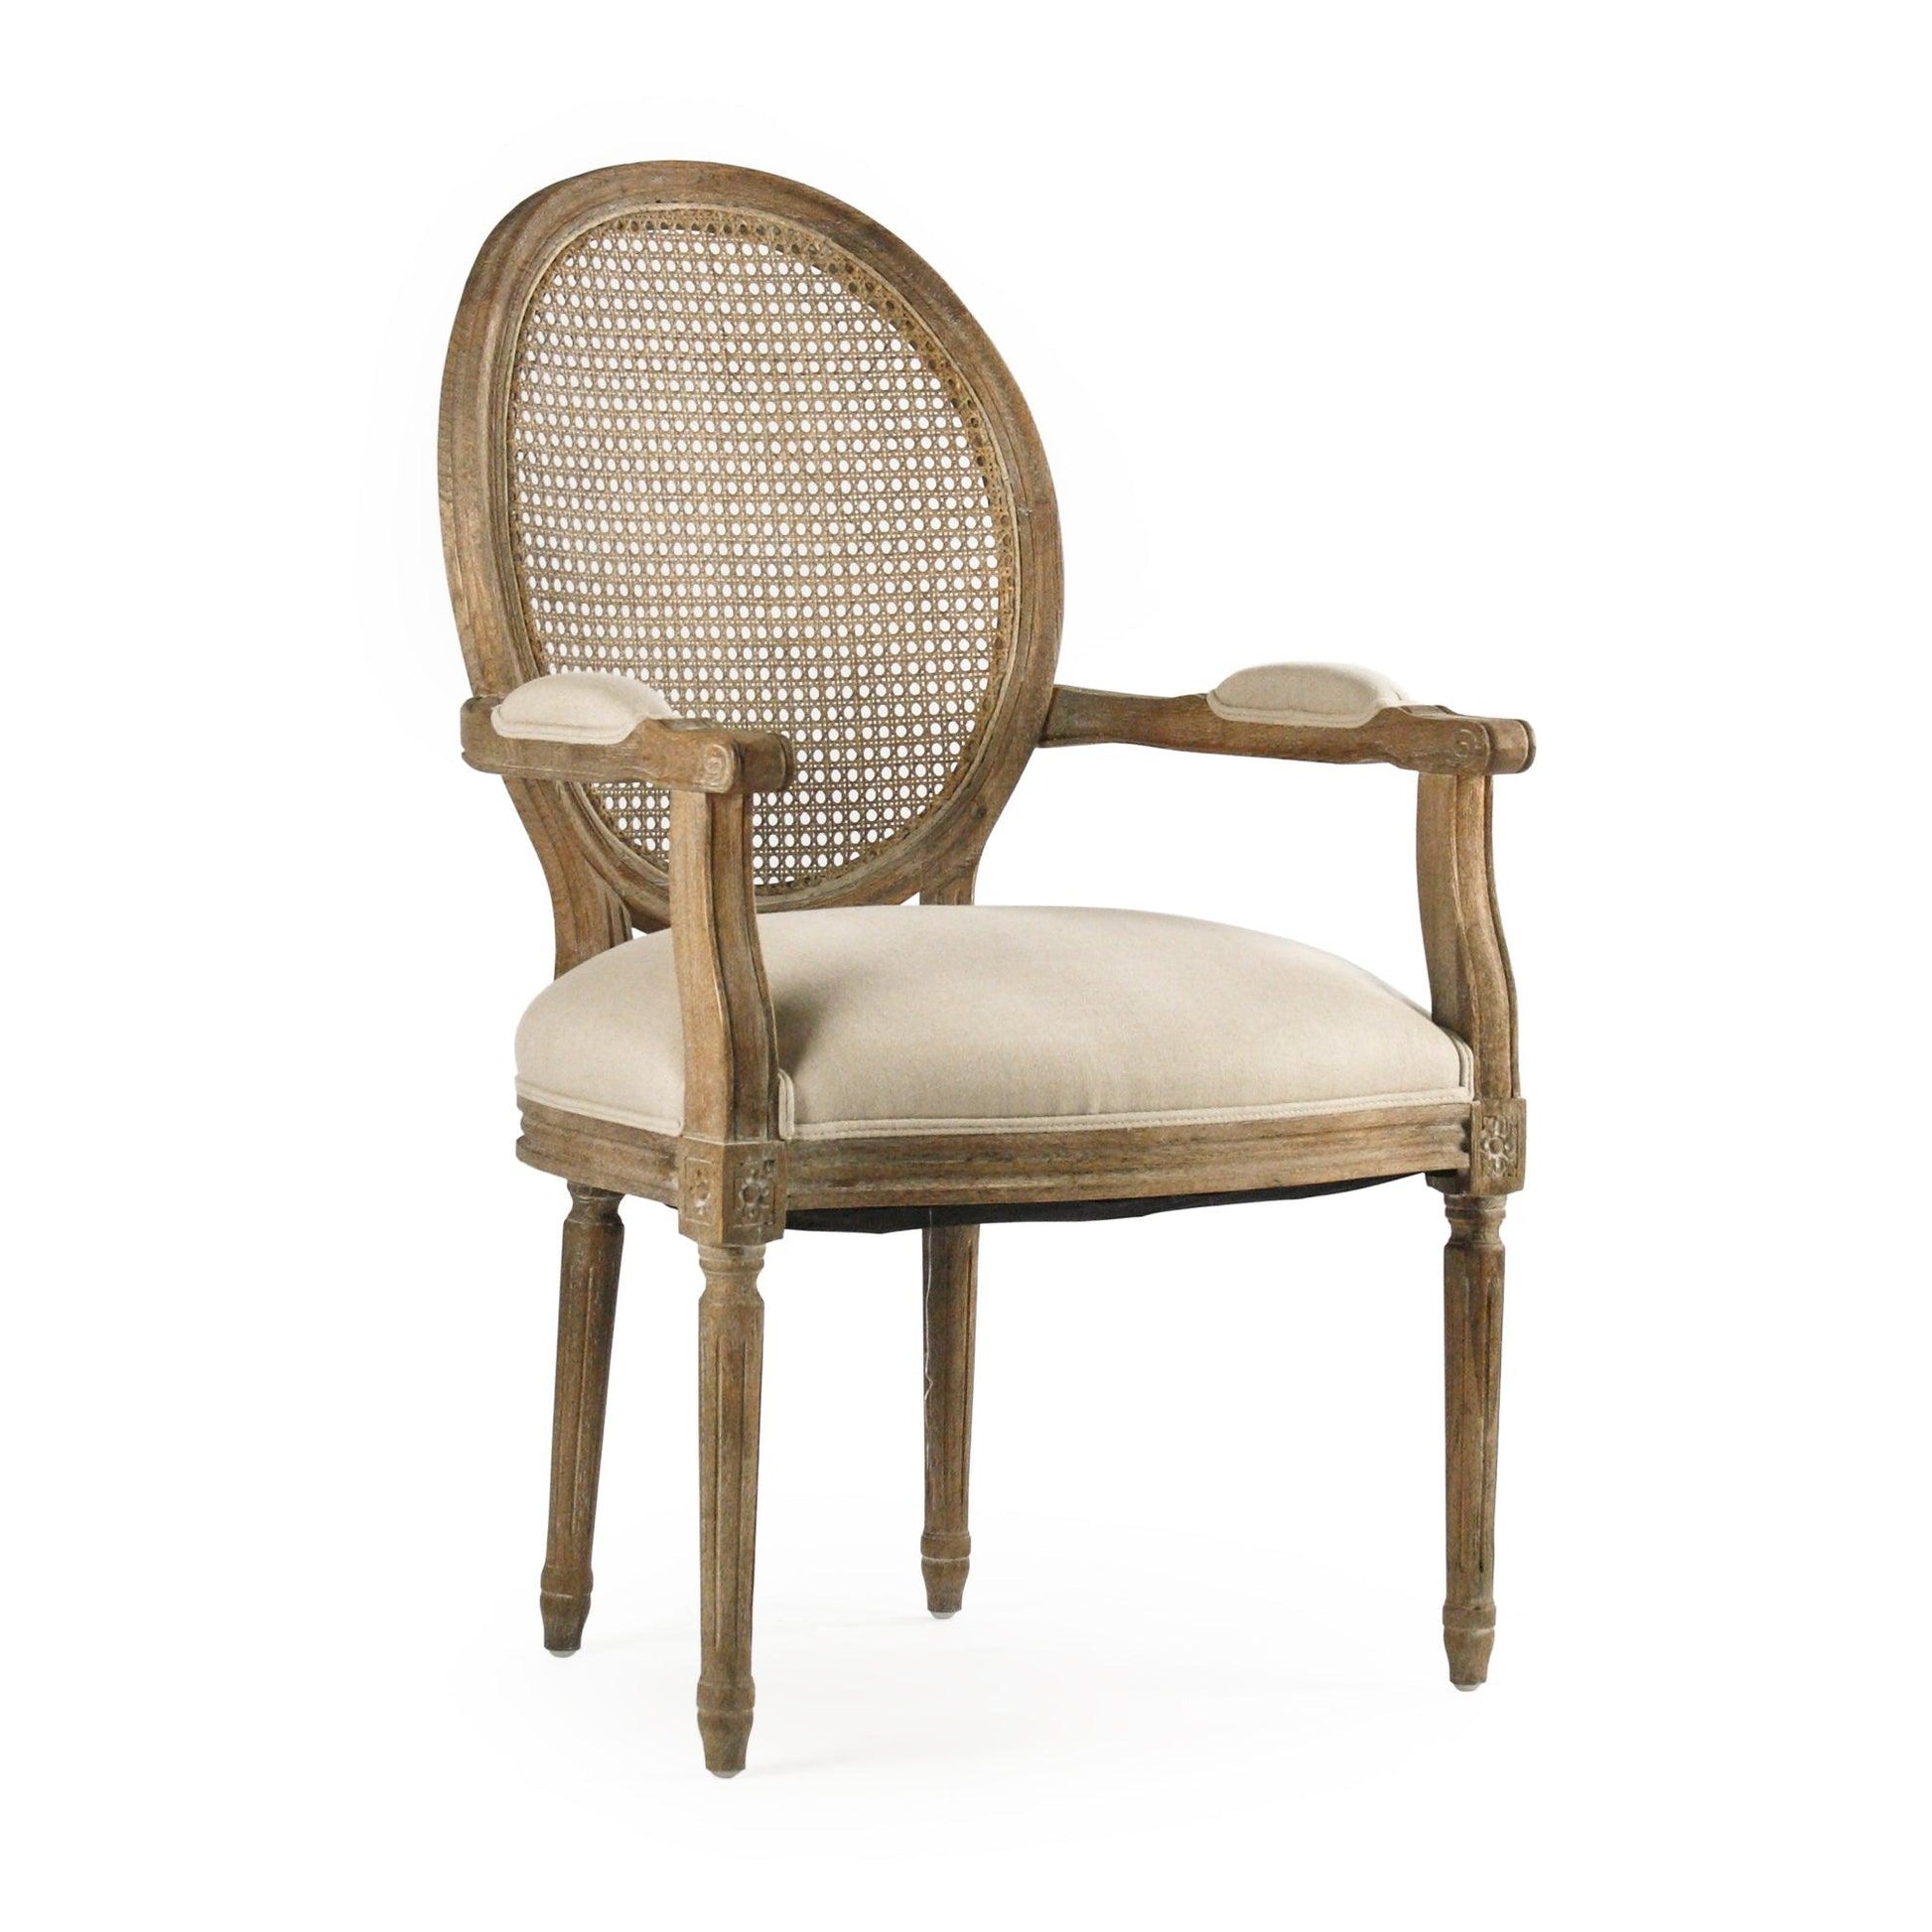 Medallion Arm Chair B009-Cane E272 A003 FredCo